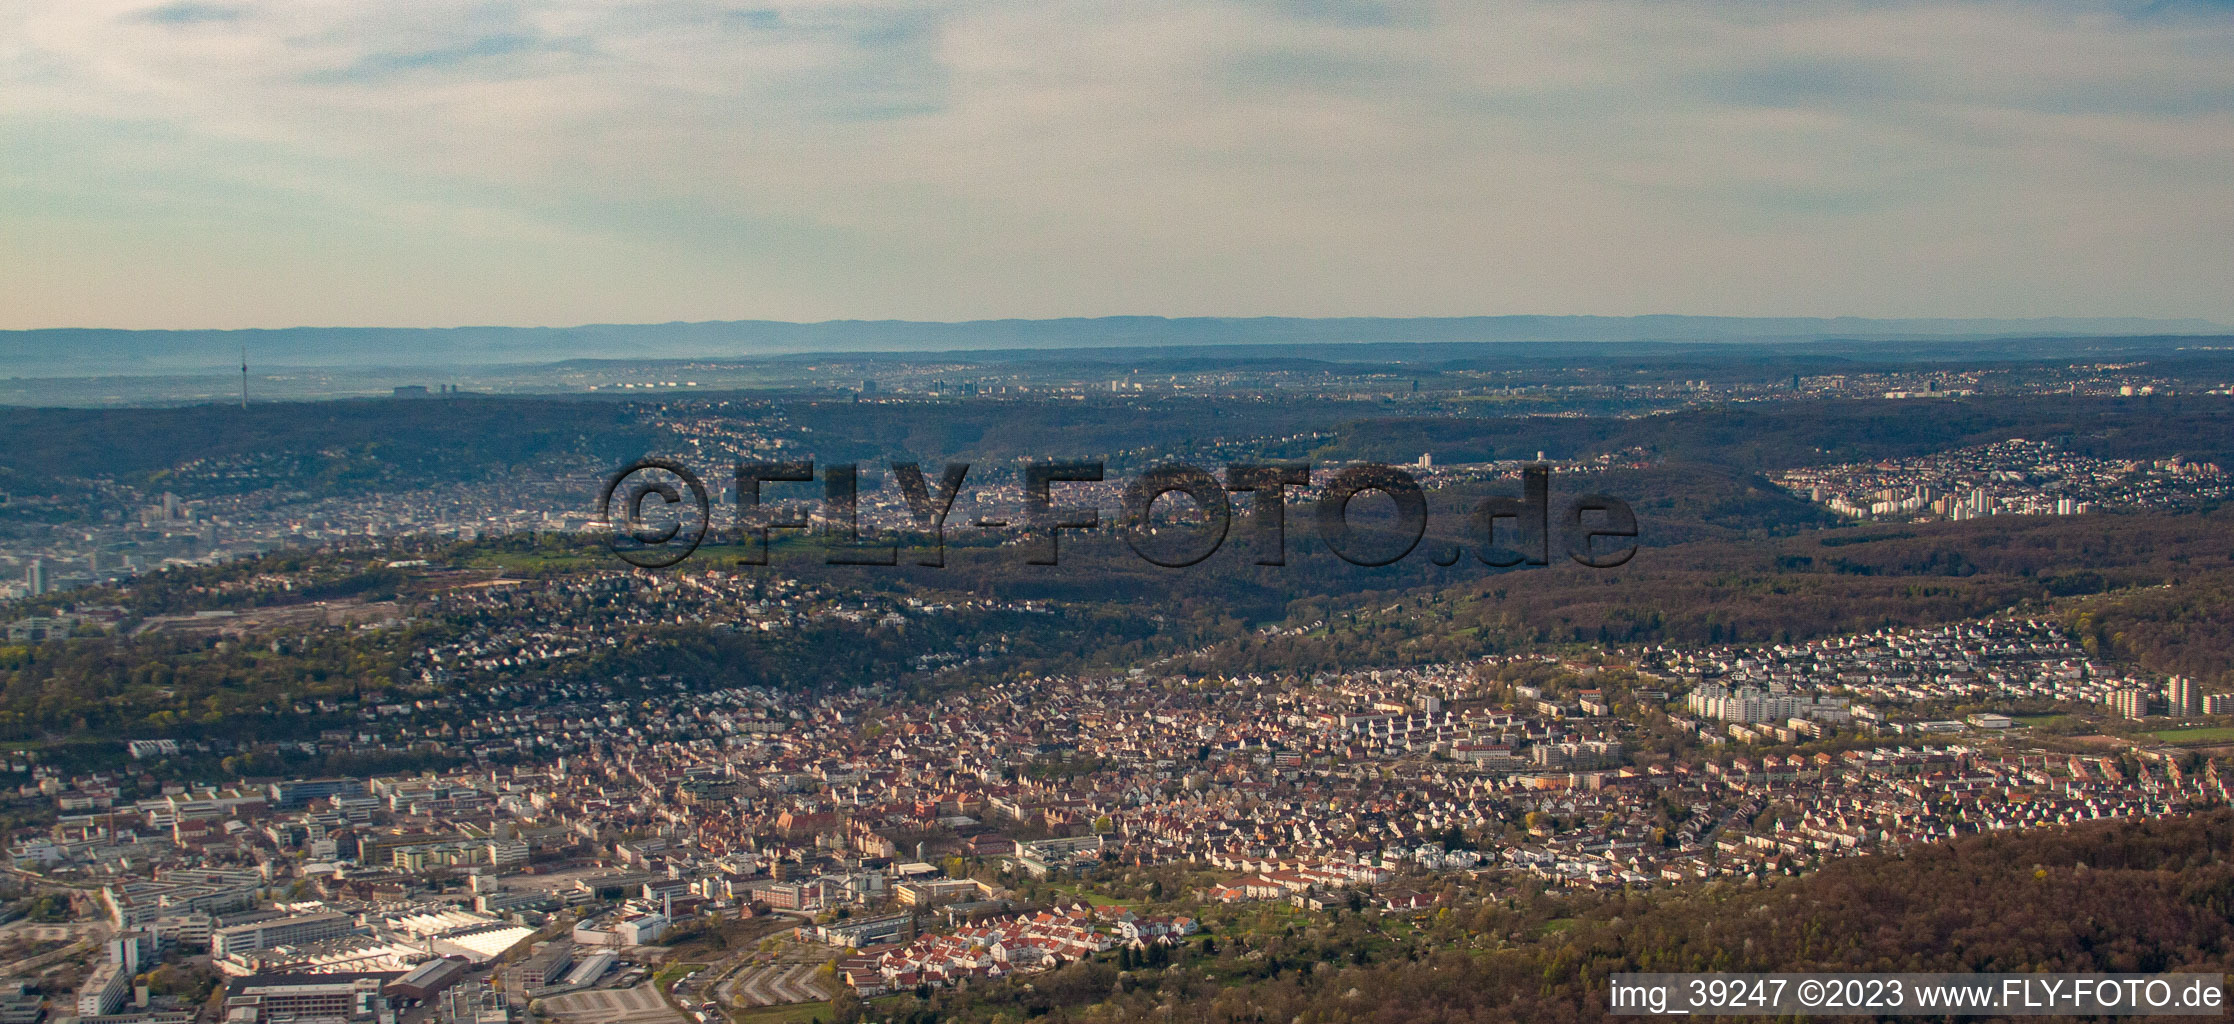 Luftbild von Ortsteil Zuffenhausen in Stuttgart im Bundesland Baden-Württemberg, Deutschland